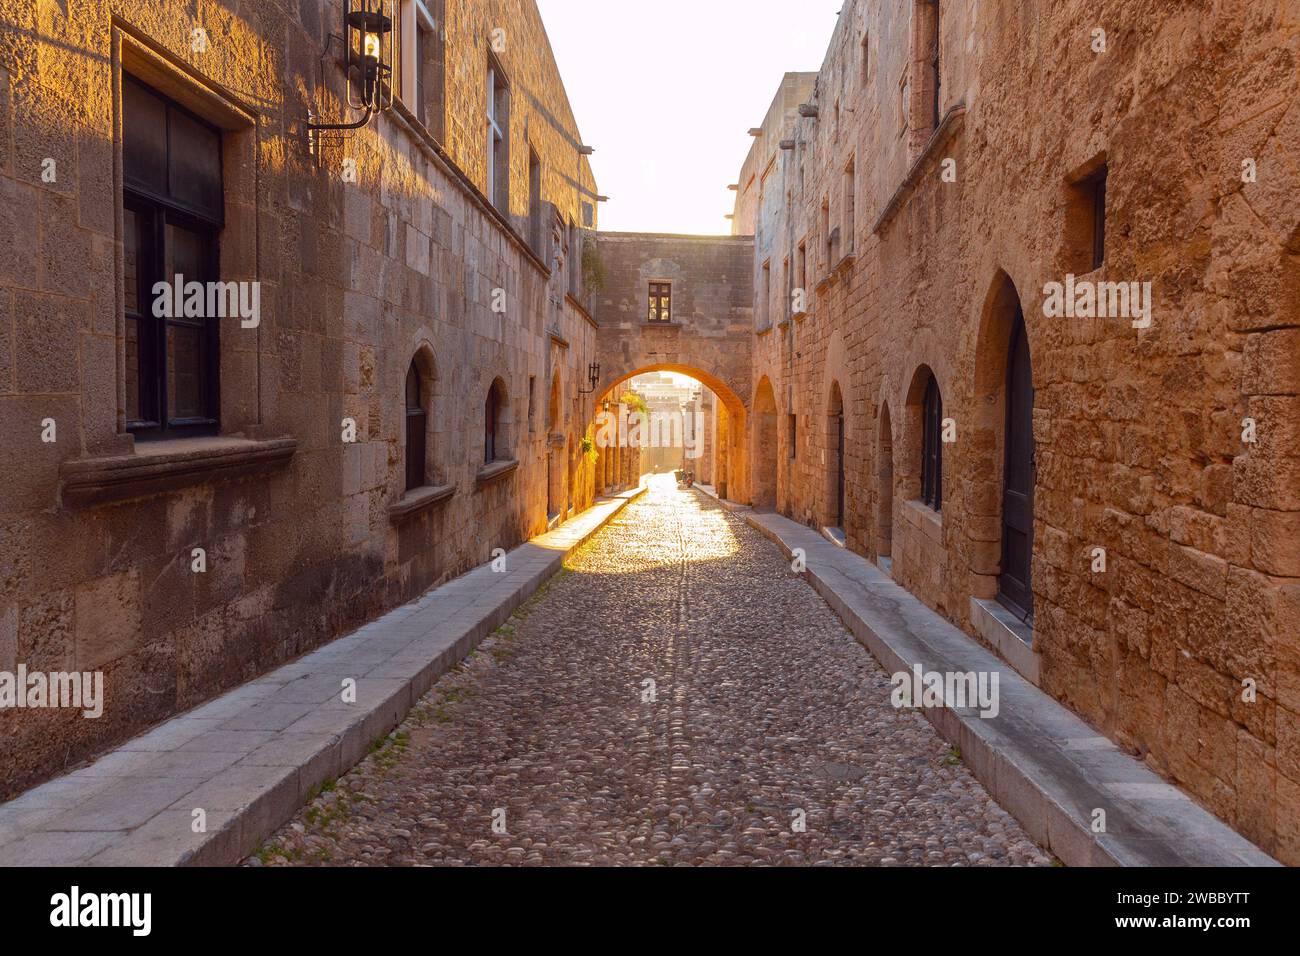 Una stretta strada medievale in pietra illuminata dal sole mattutino nella città vecchia. Rhodes. Grecia. Foto Stock